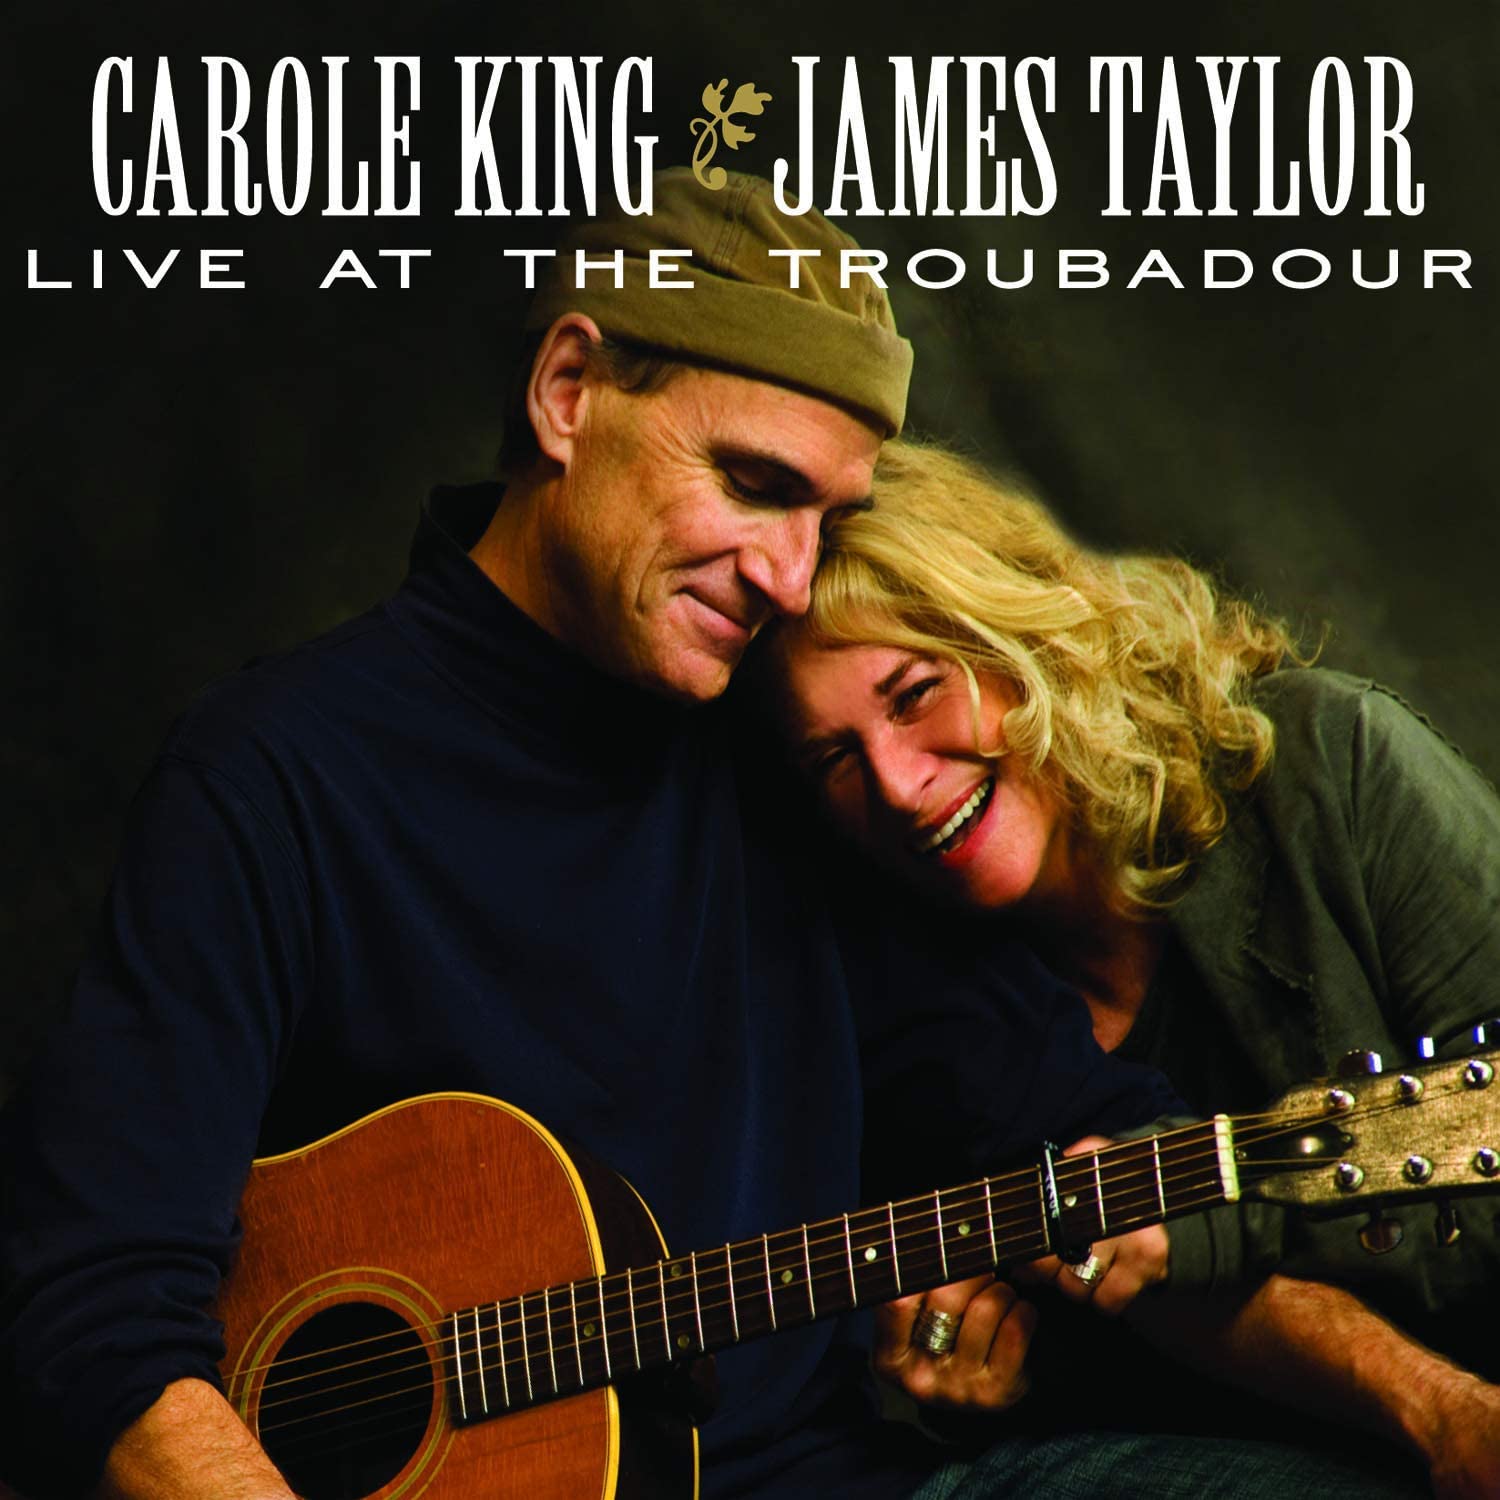 Carole King & James Taylor - Live at the Troubadour (Vinyl 2LP)